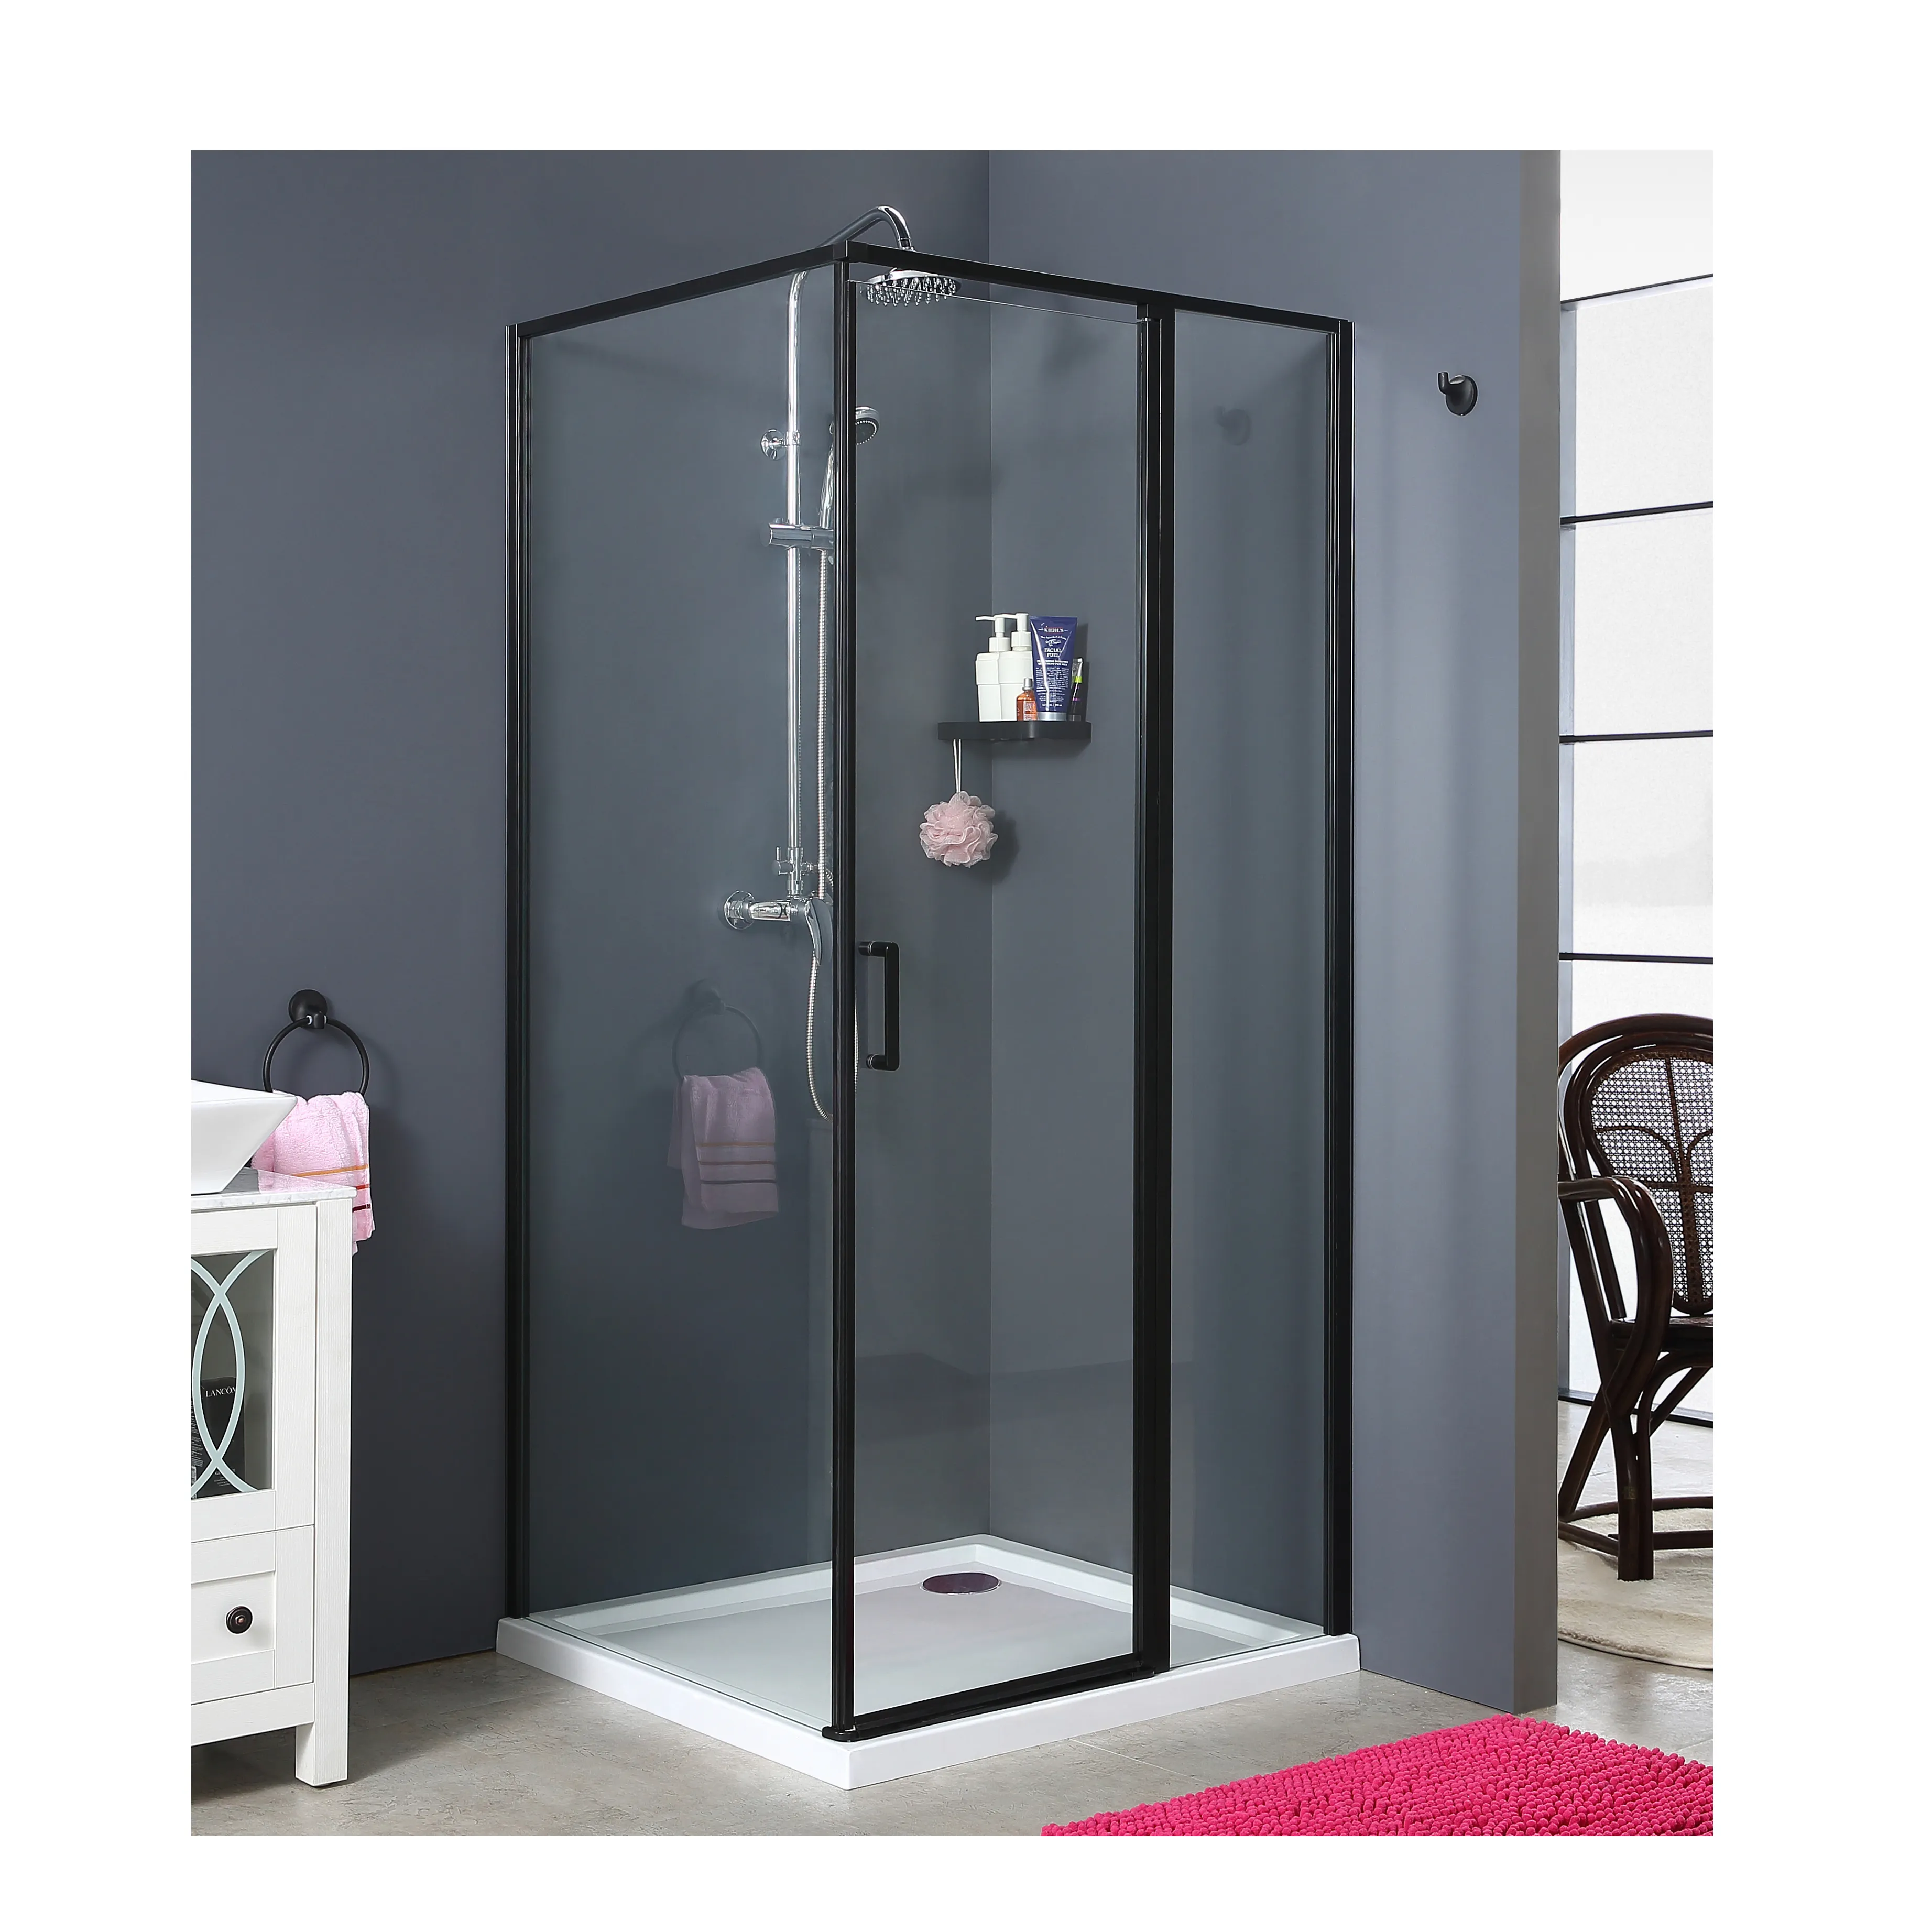 Porte pivotante à cadre noir avec compartiment de douche, appareil de douche en verre trempé transparent, 90x90x185cm